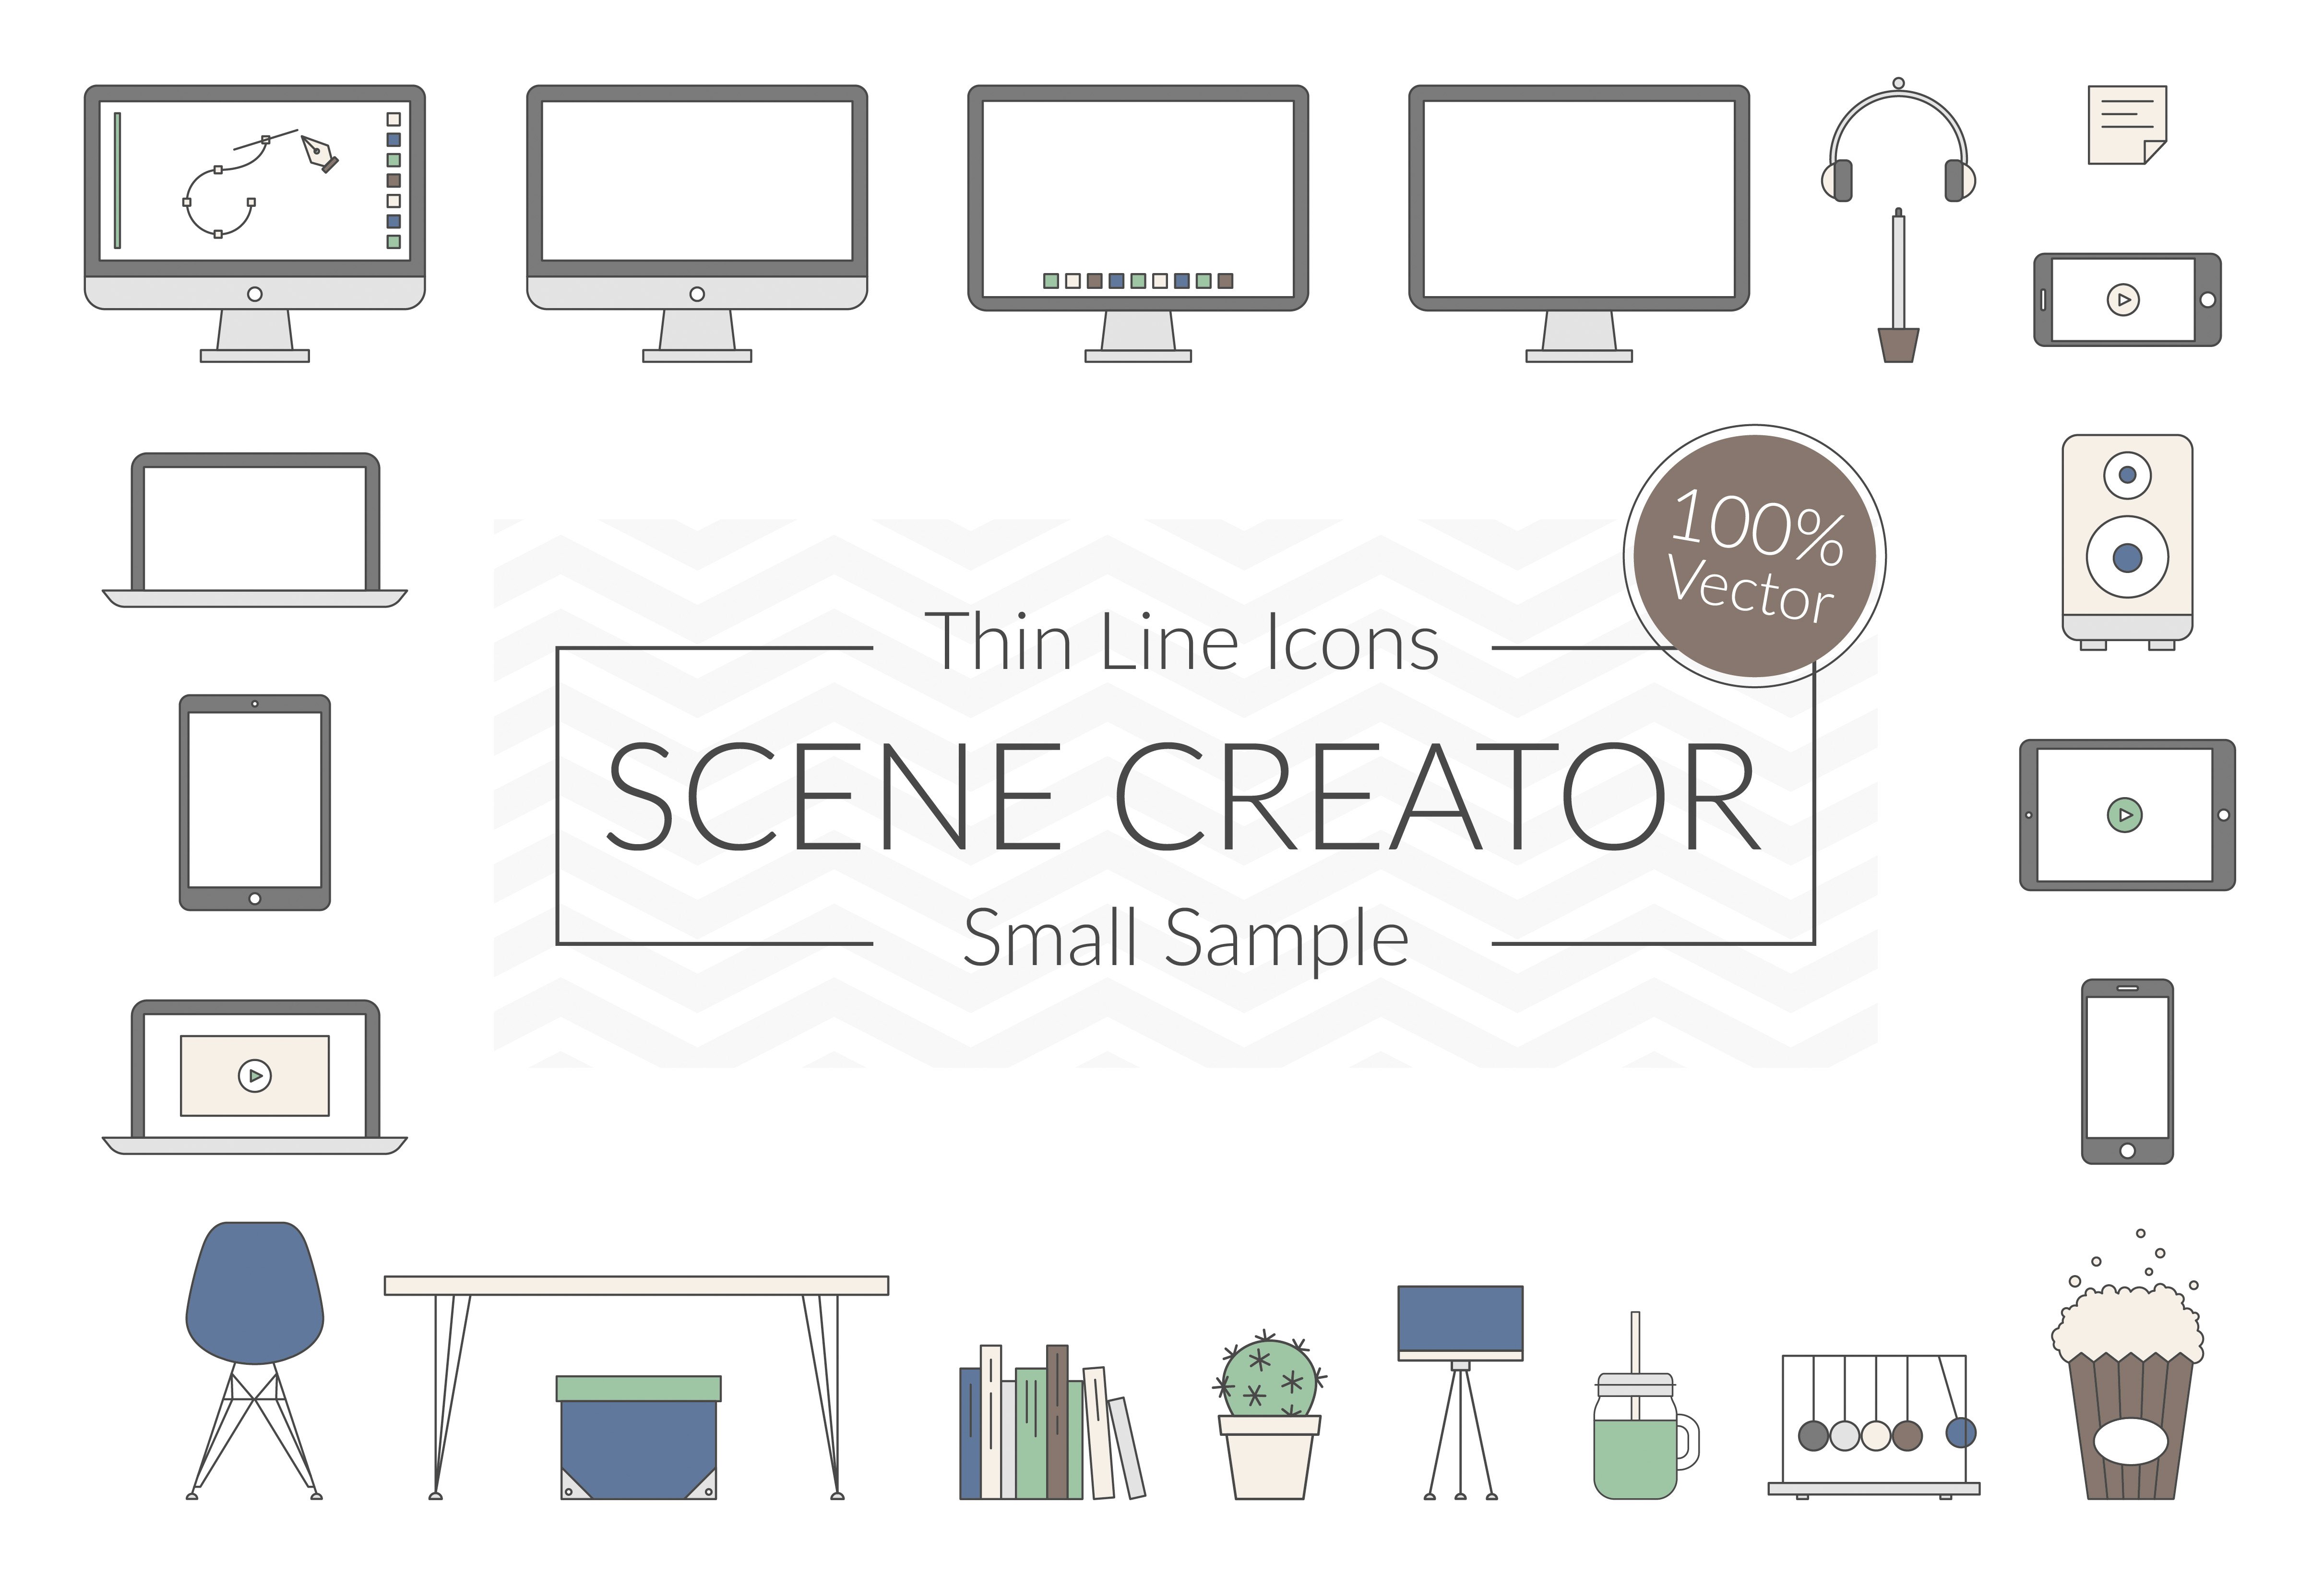 Vector Scene Creator – Small Sample cover image.